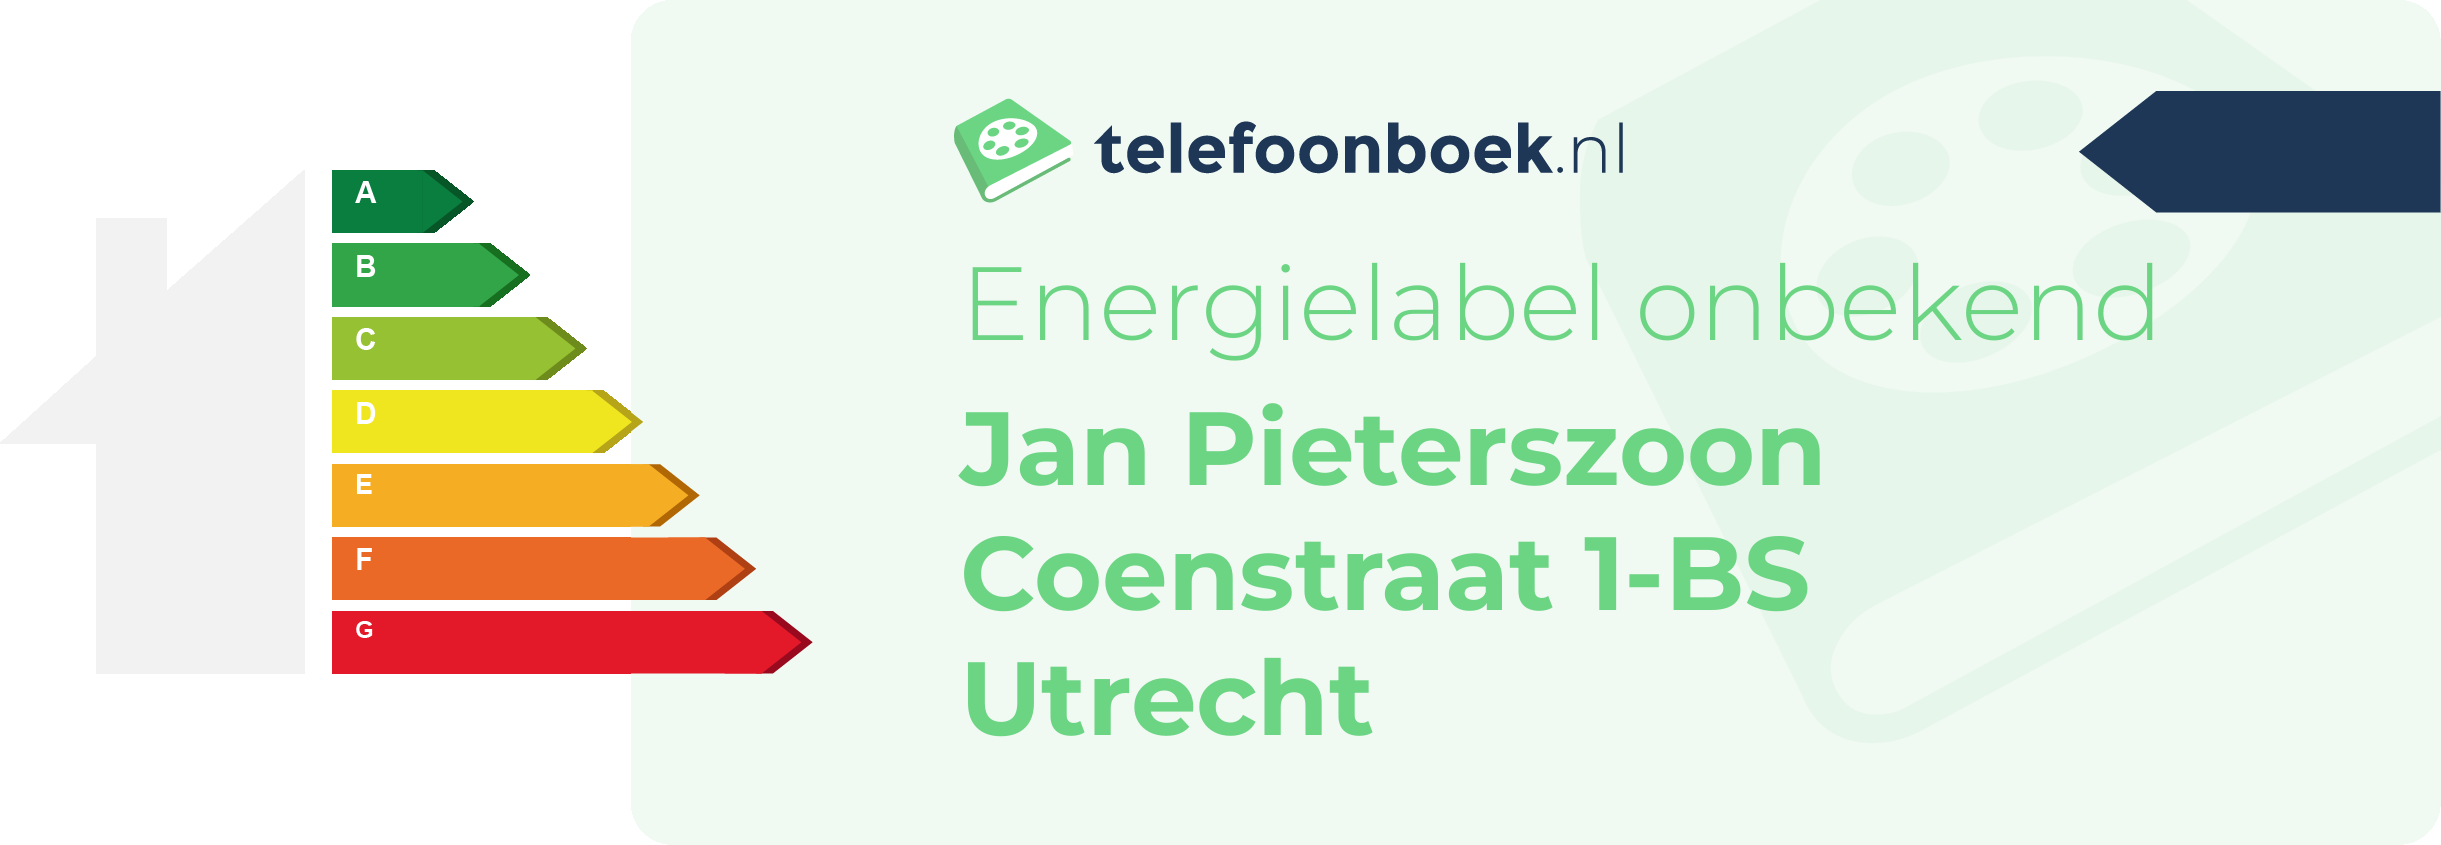 Energielabel Jan Pieterszoon Coenstraat 1-BS Utrecht